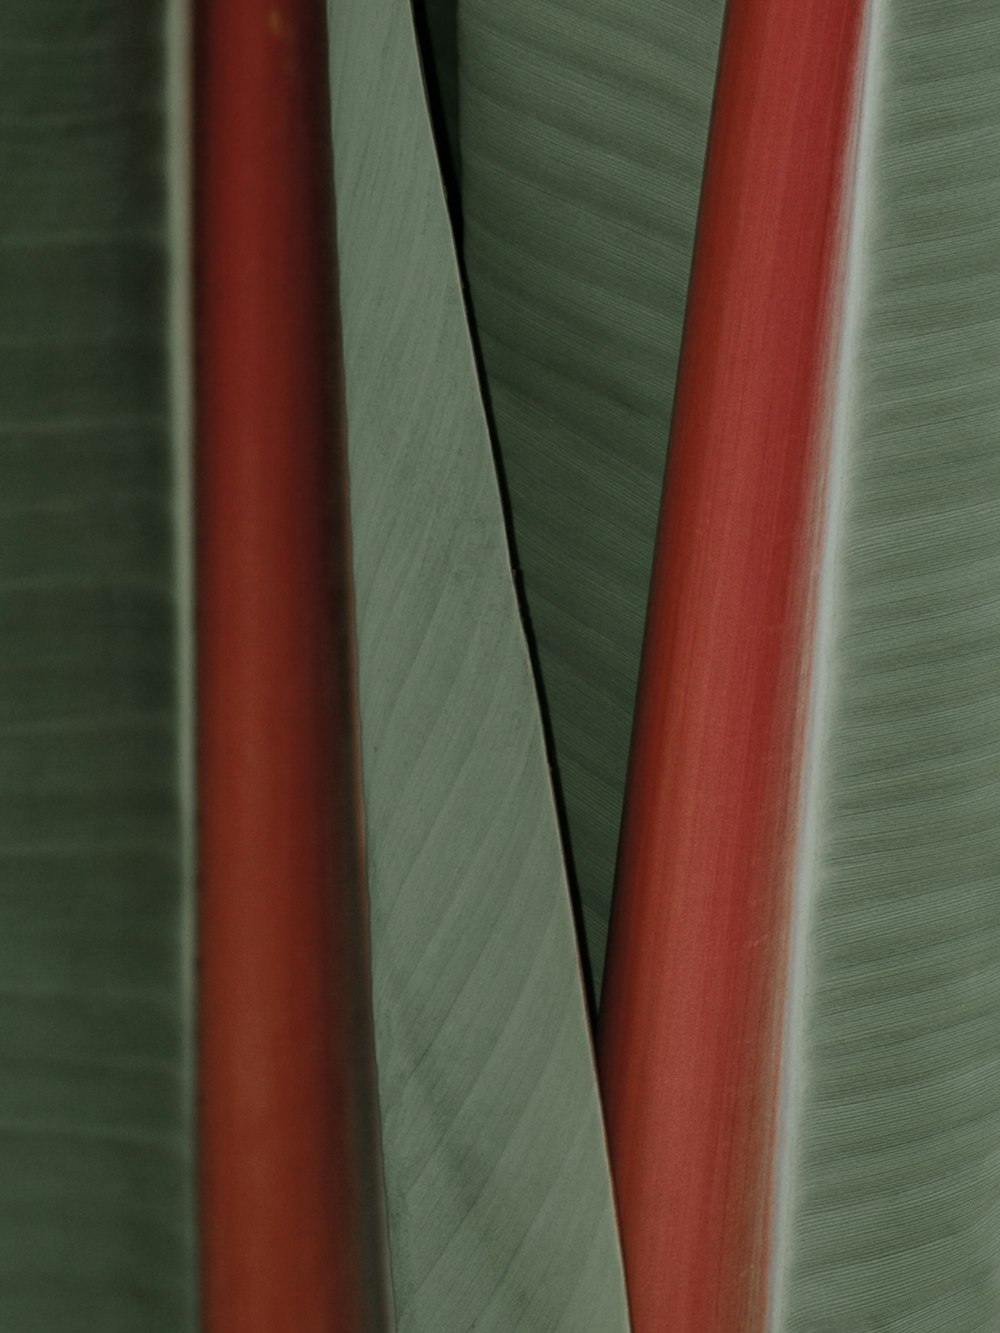 um close up de uma planta vermelha e verde